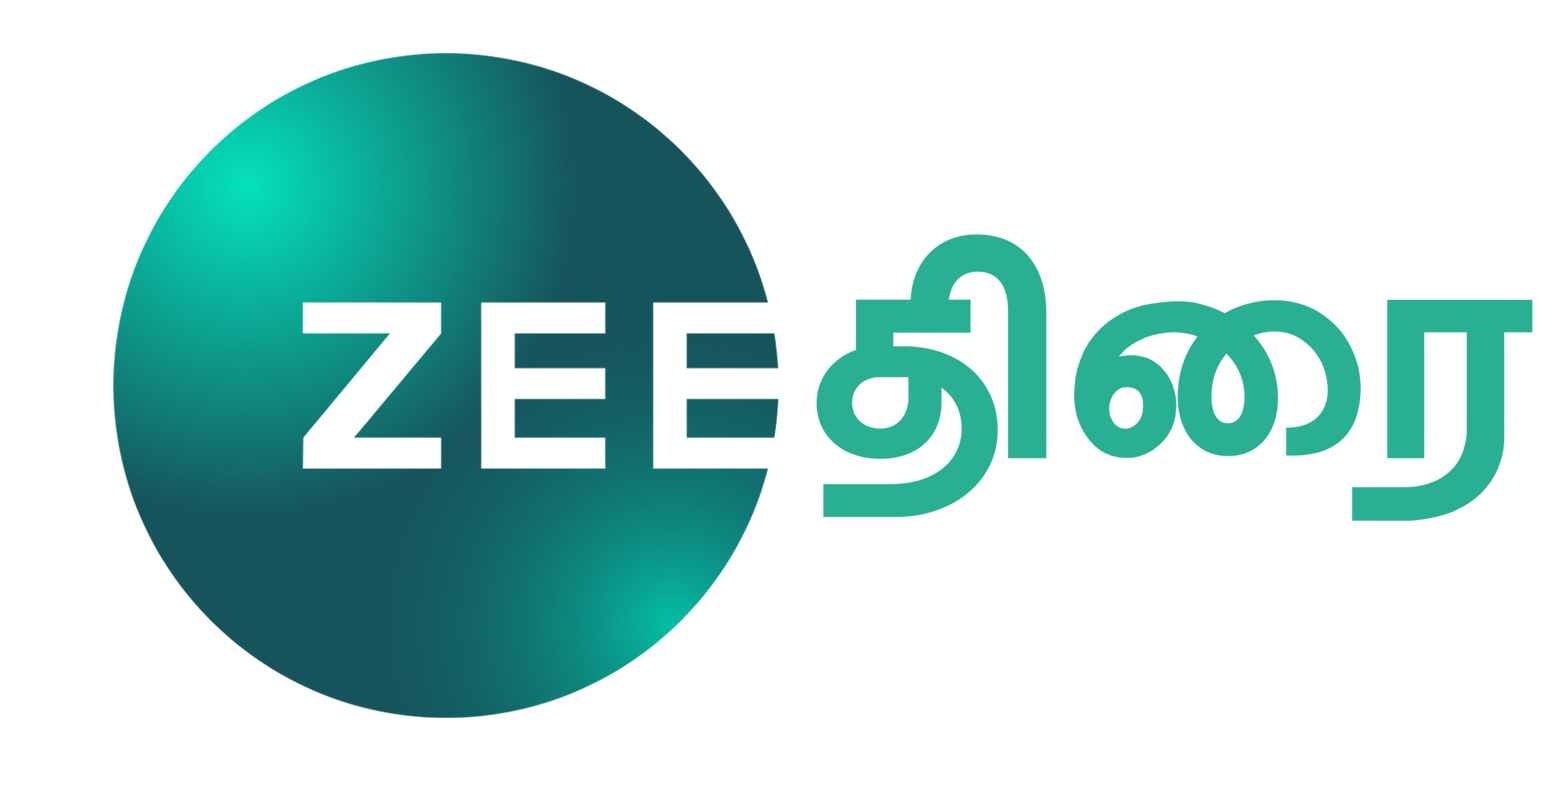 Zee thirai HD logo.